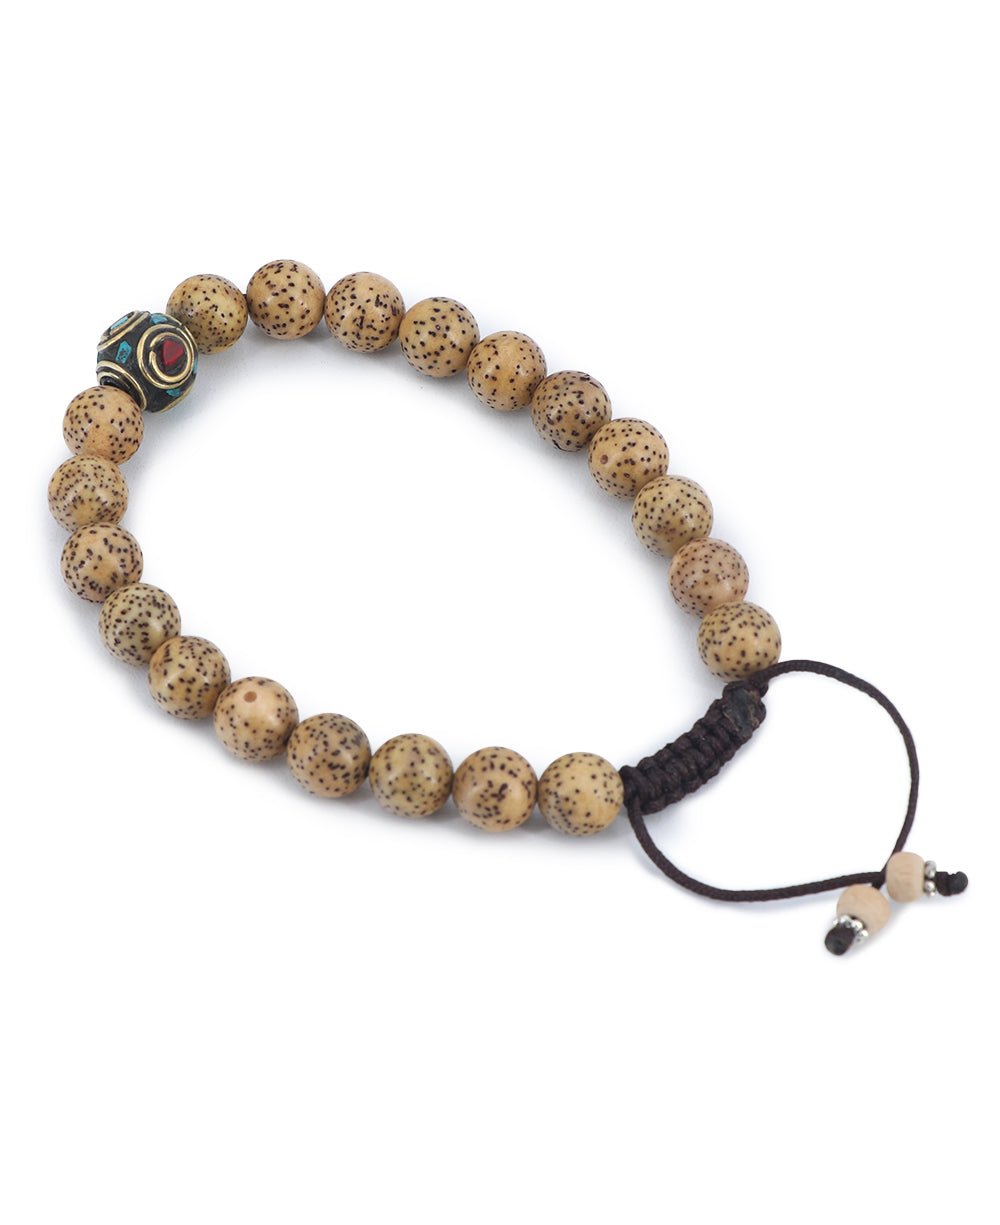 Mala Bracelet: Buddhist Meditation Mala Beads – Buddha Groove